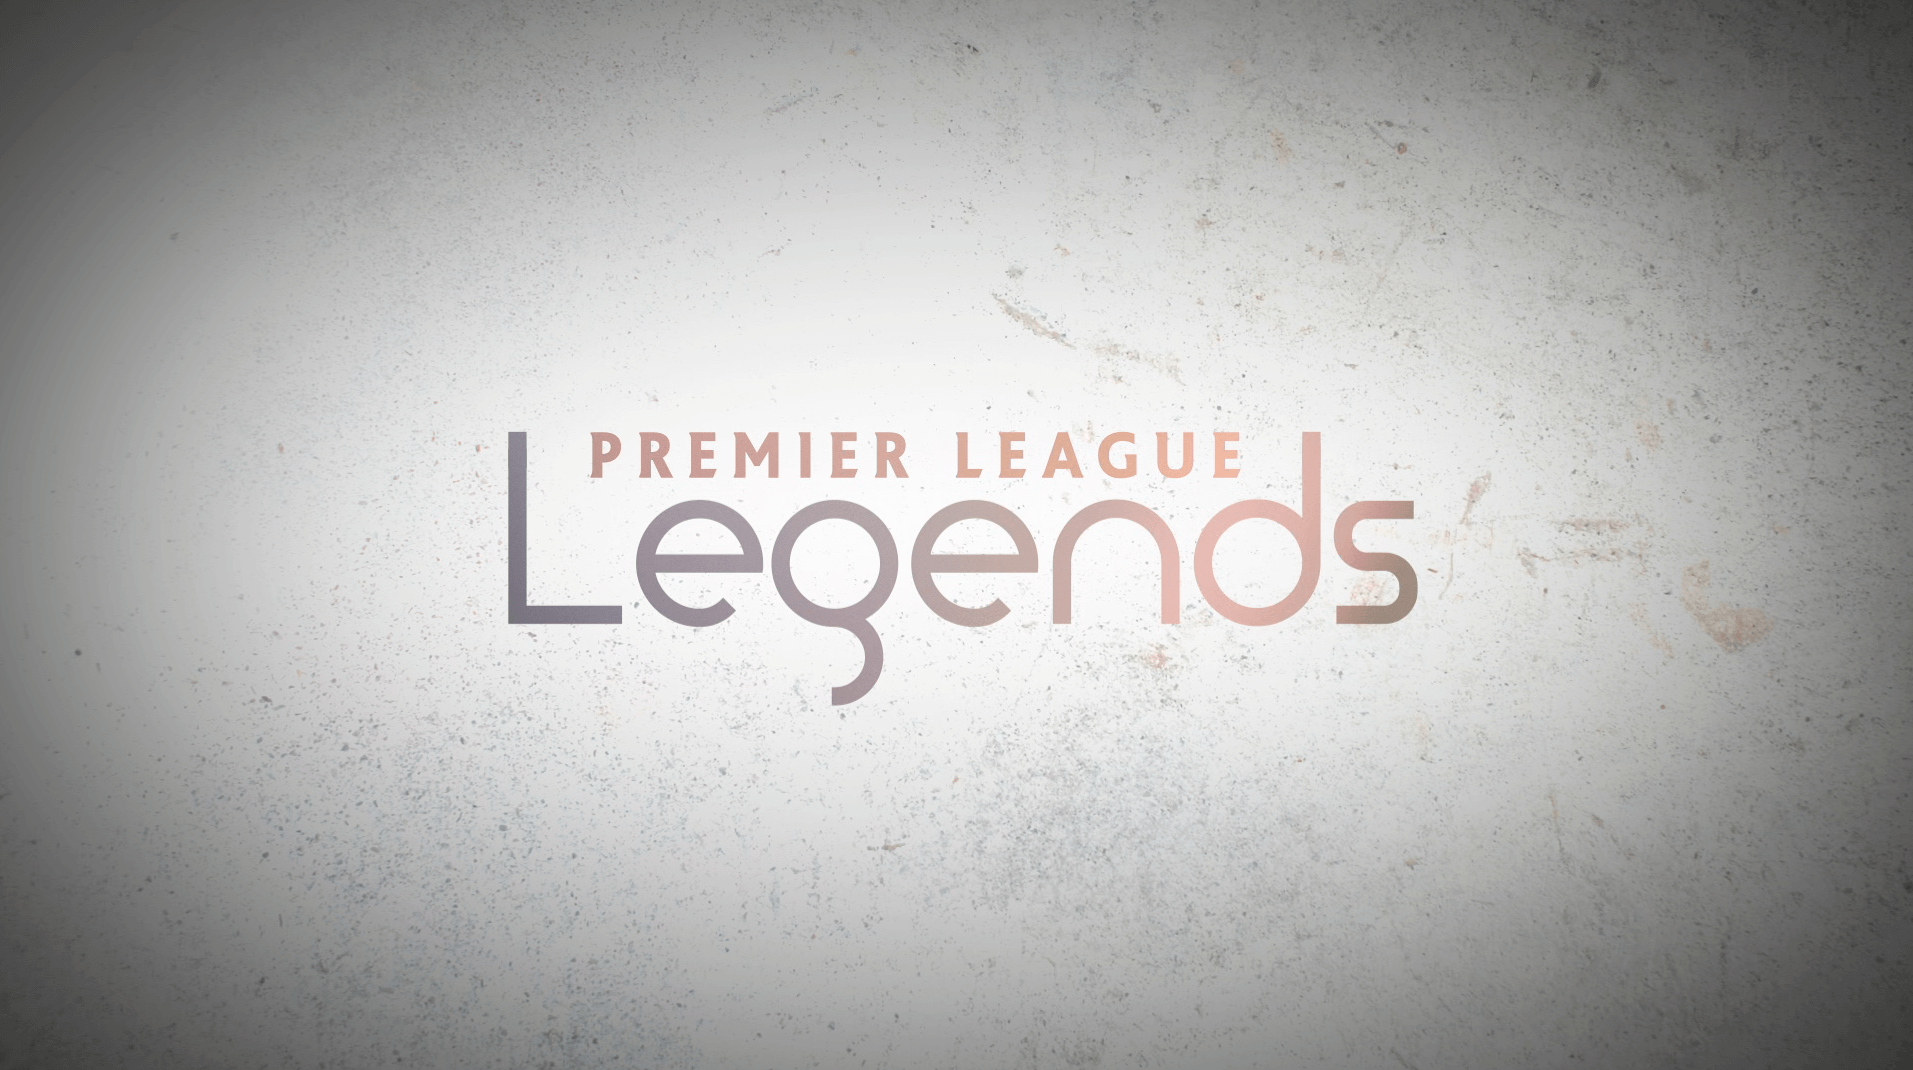 Media219 Ltd - Premier League Legends Titles